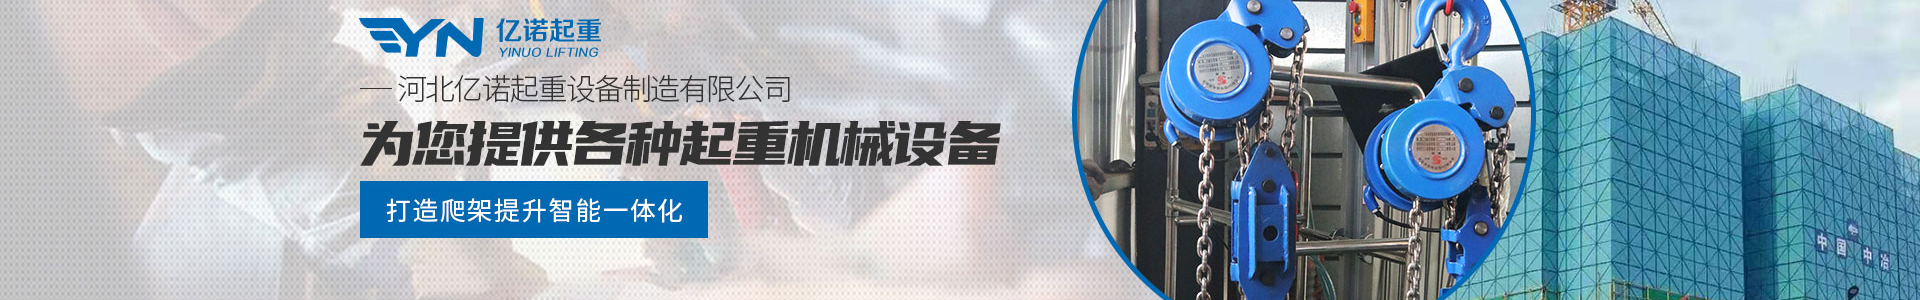 爬架葫芦生产组装车间_技术支持_亿诺起重有限公司